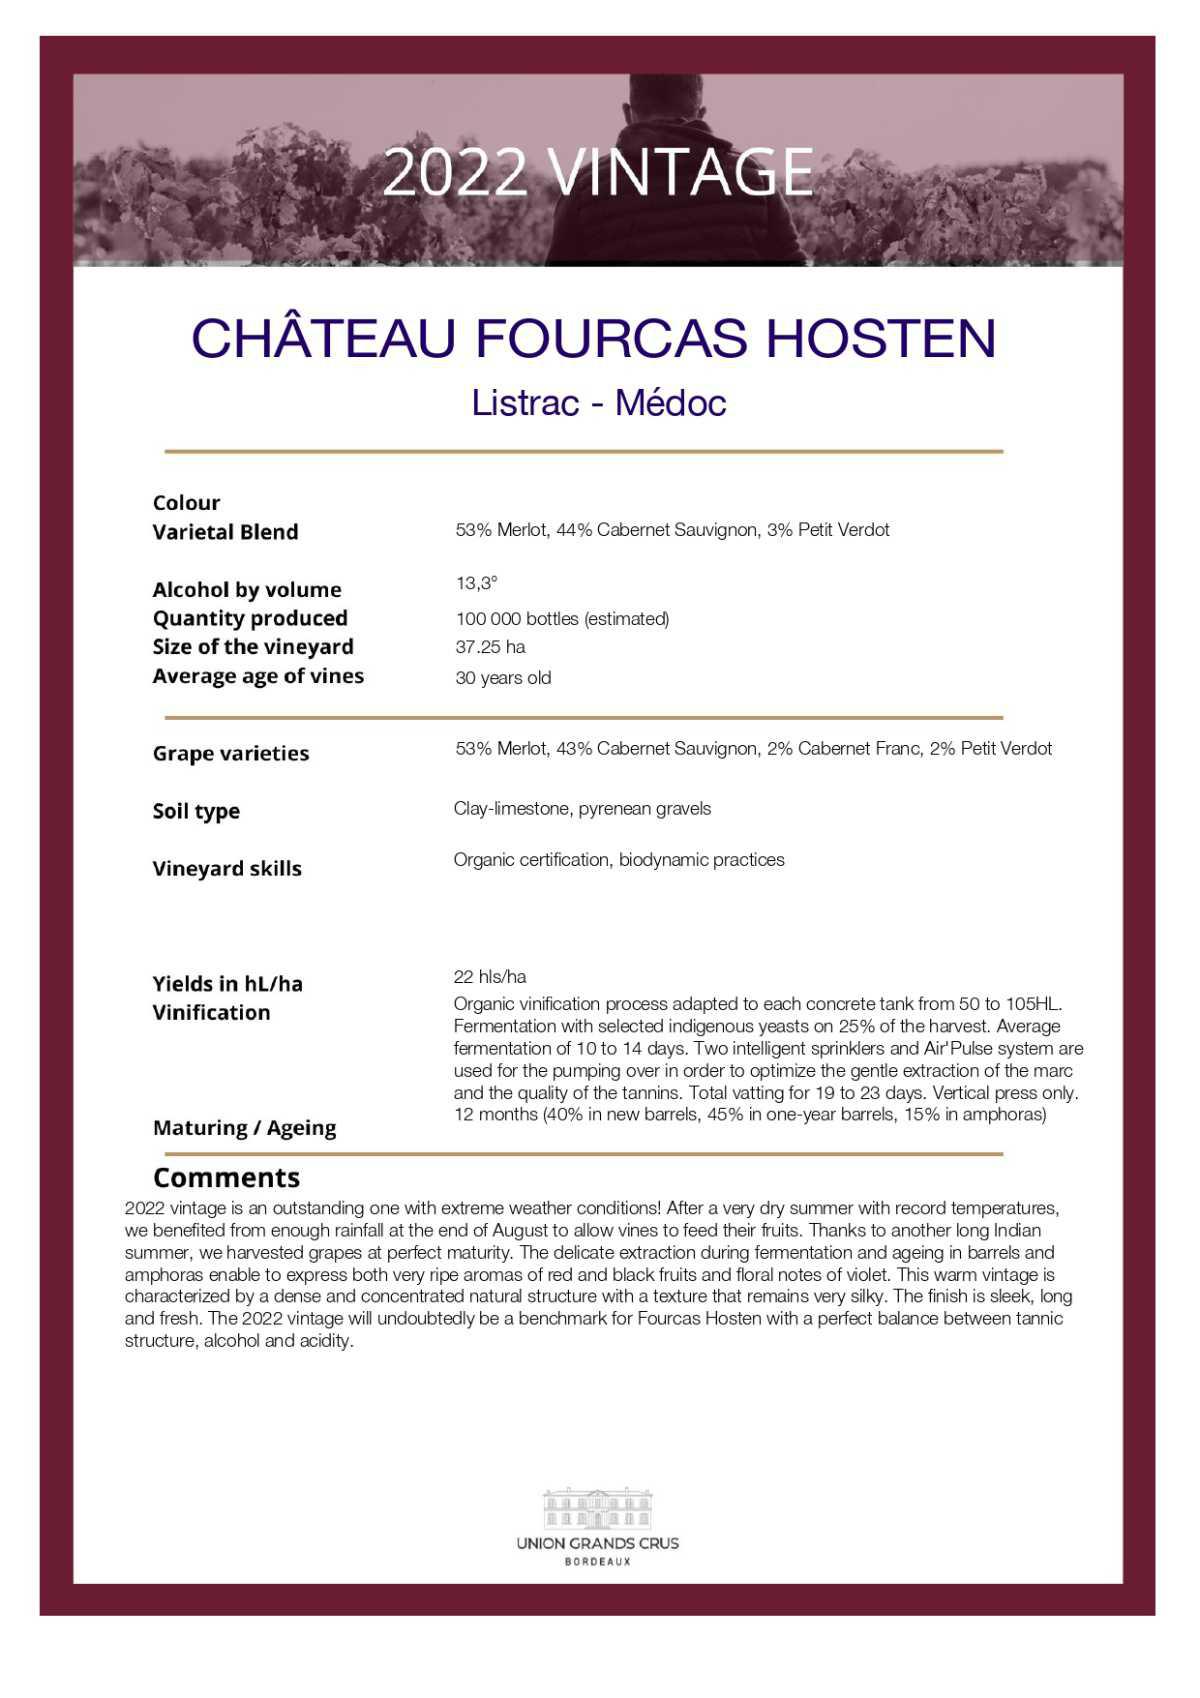  Château Fourcas Hosten